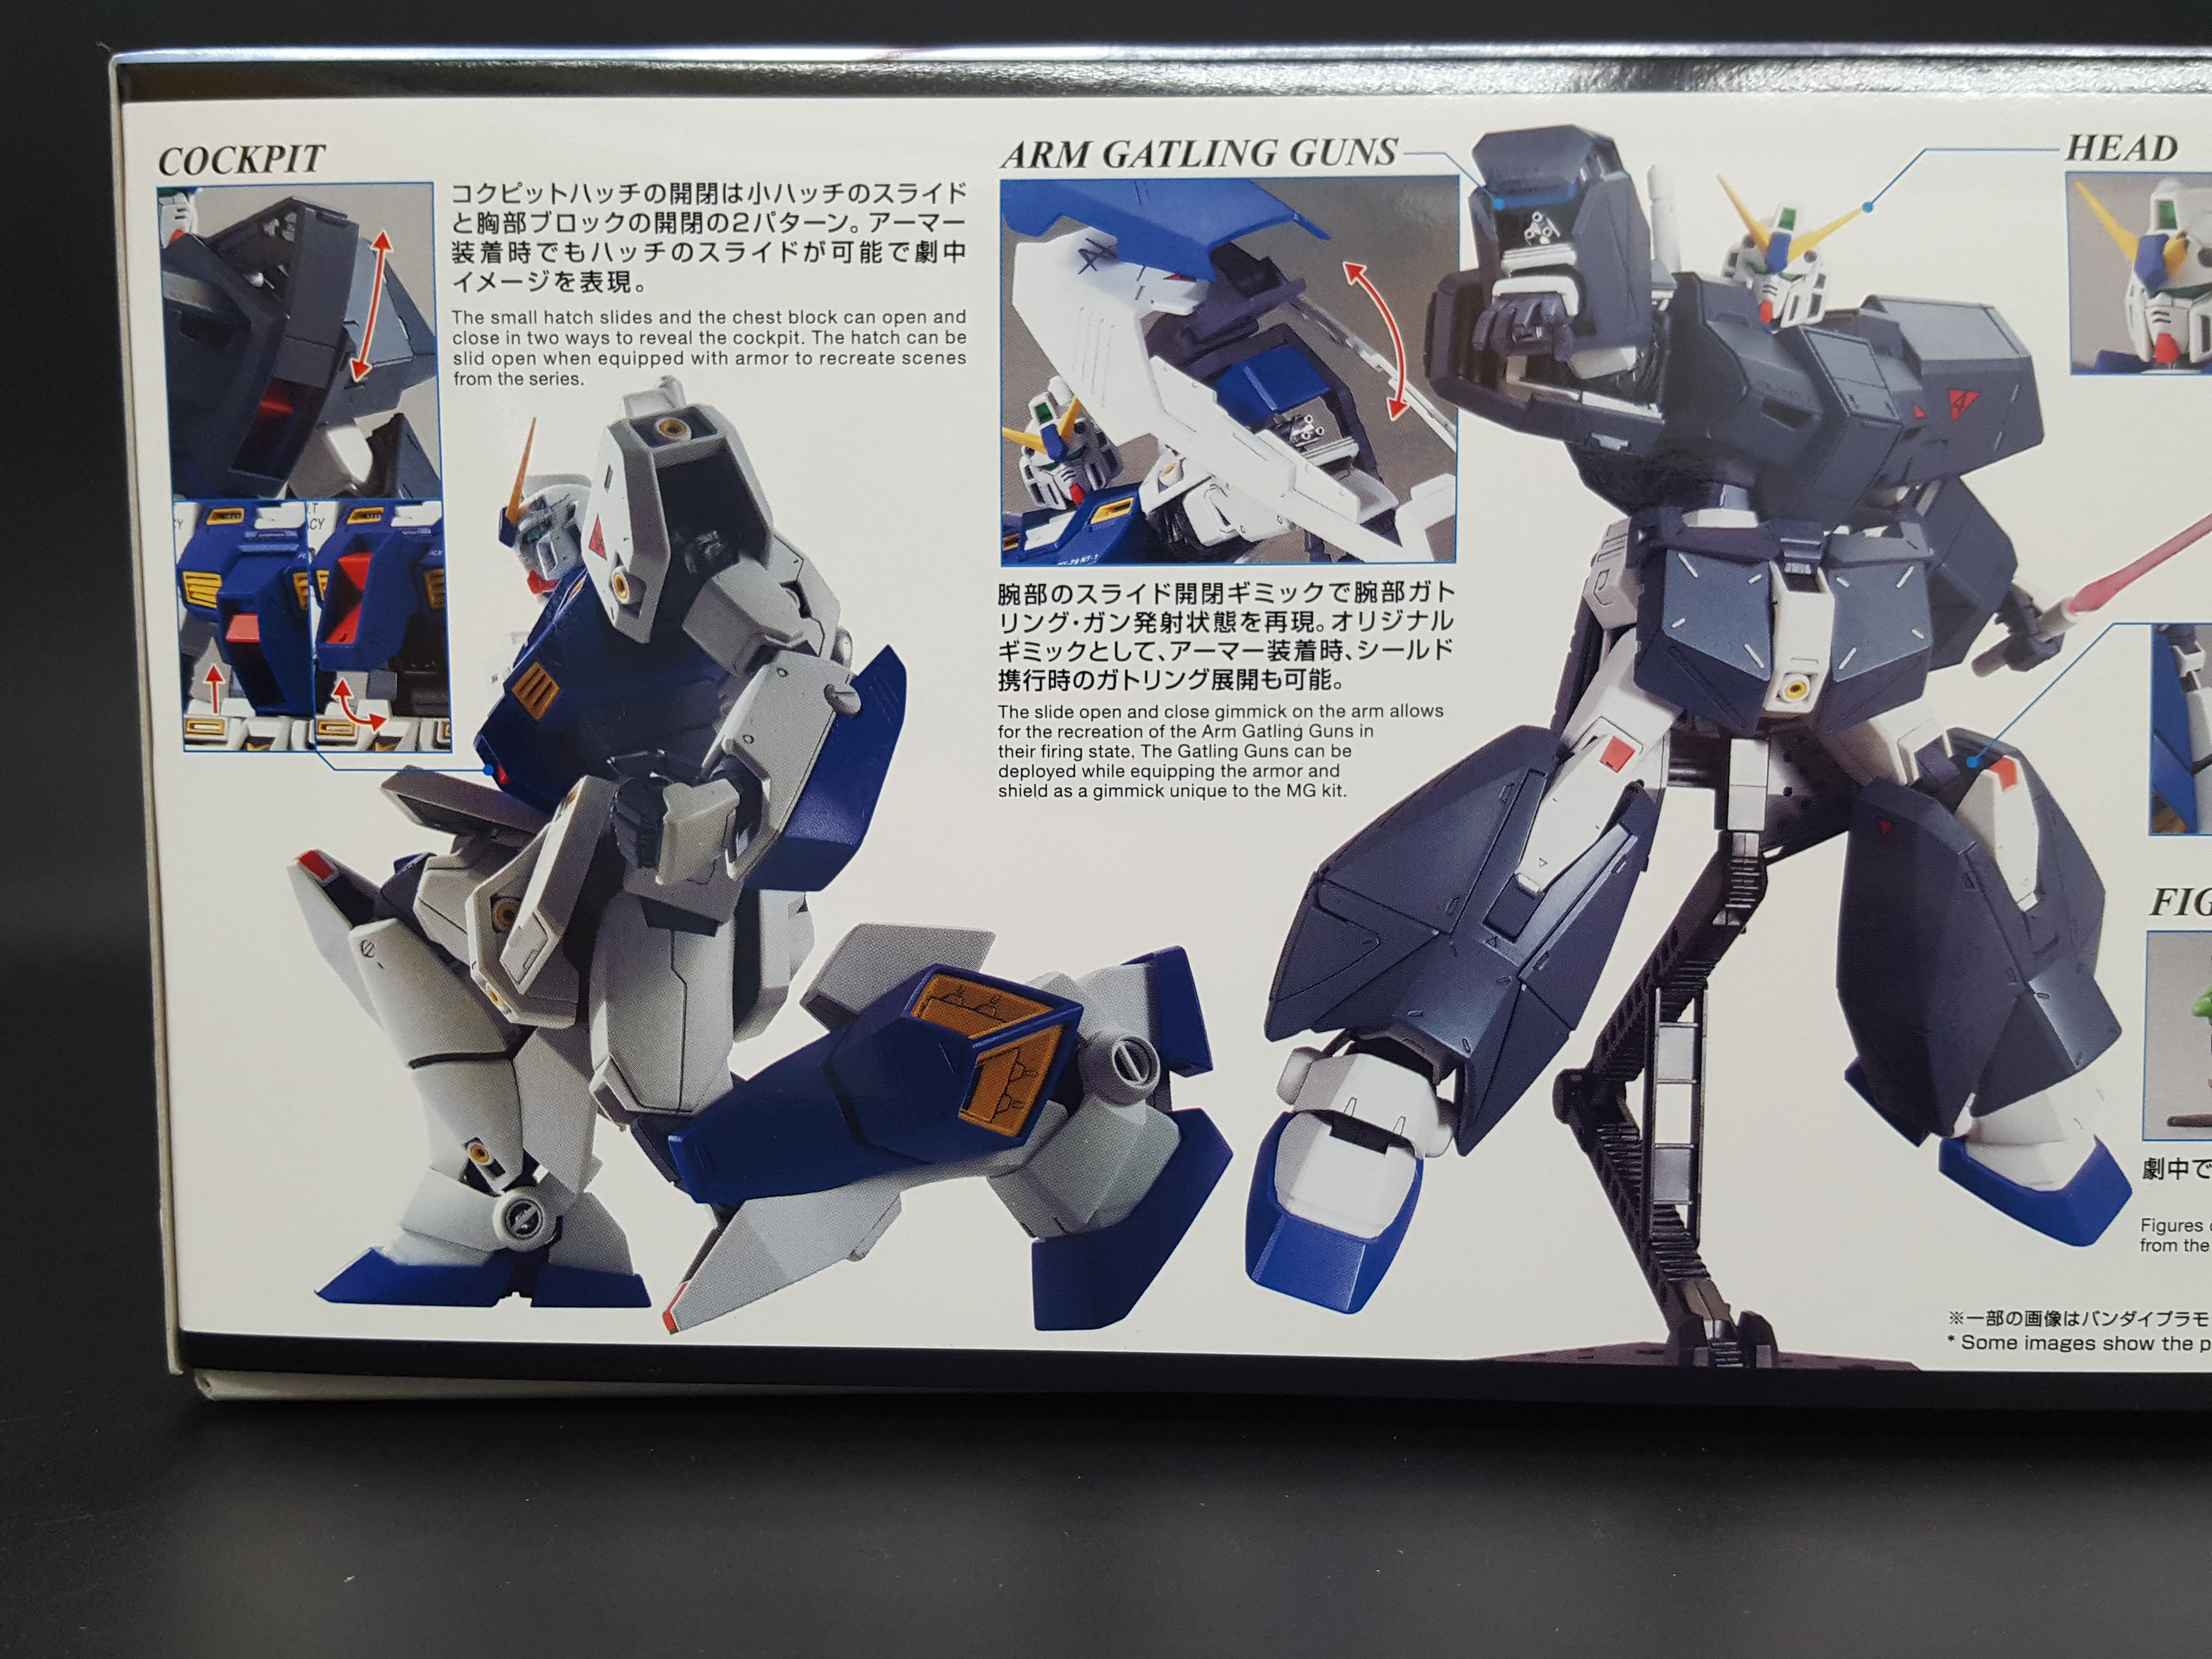 1/100 MG Gundam NT-1 Ver.2.0